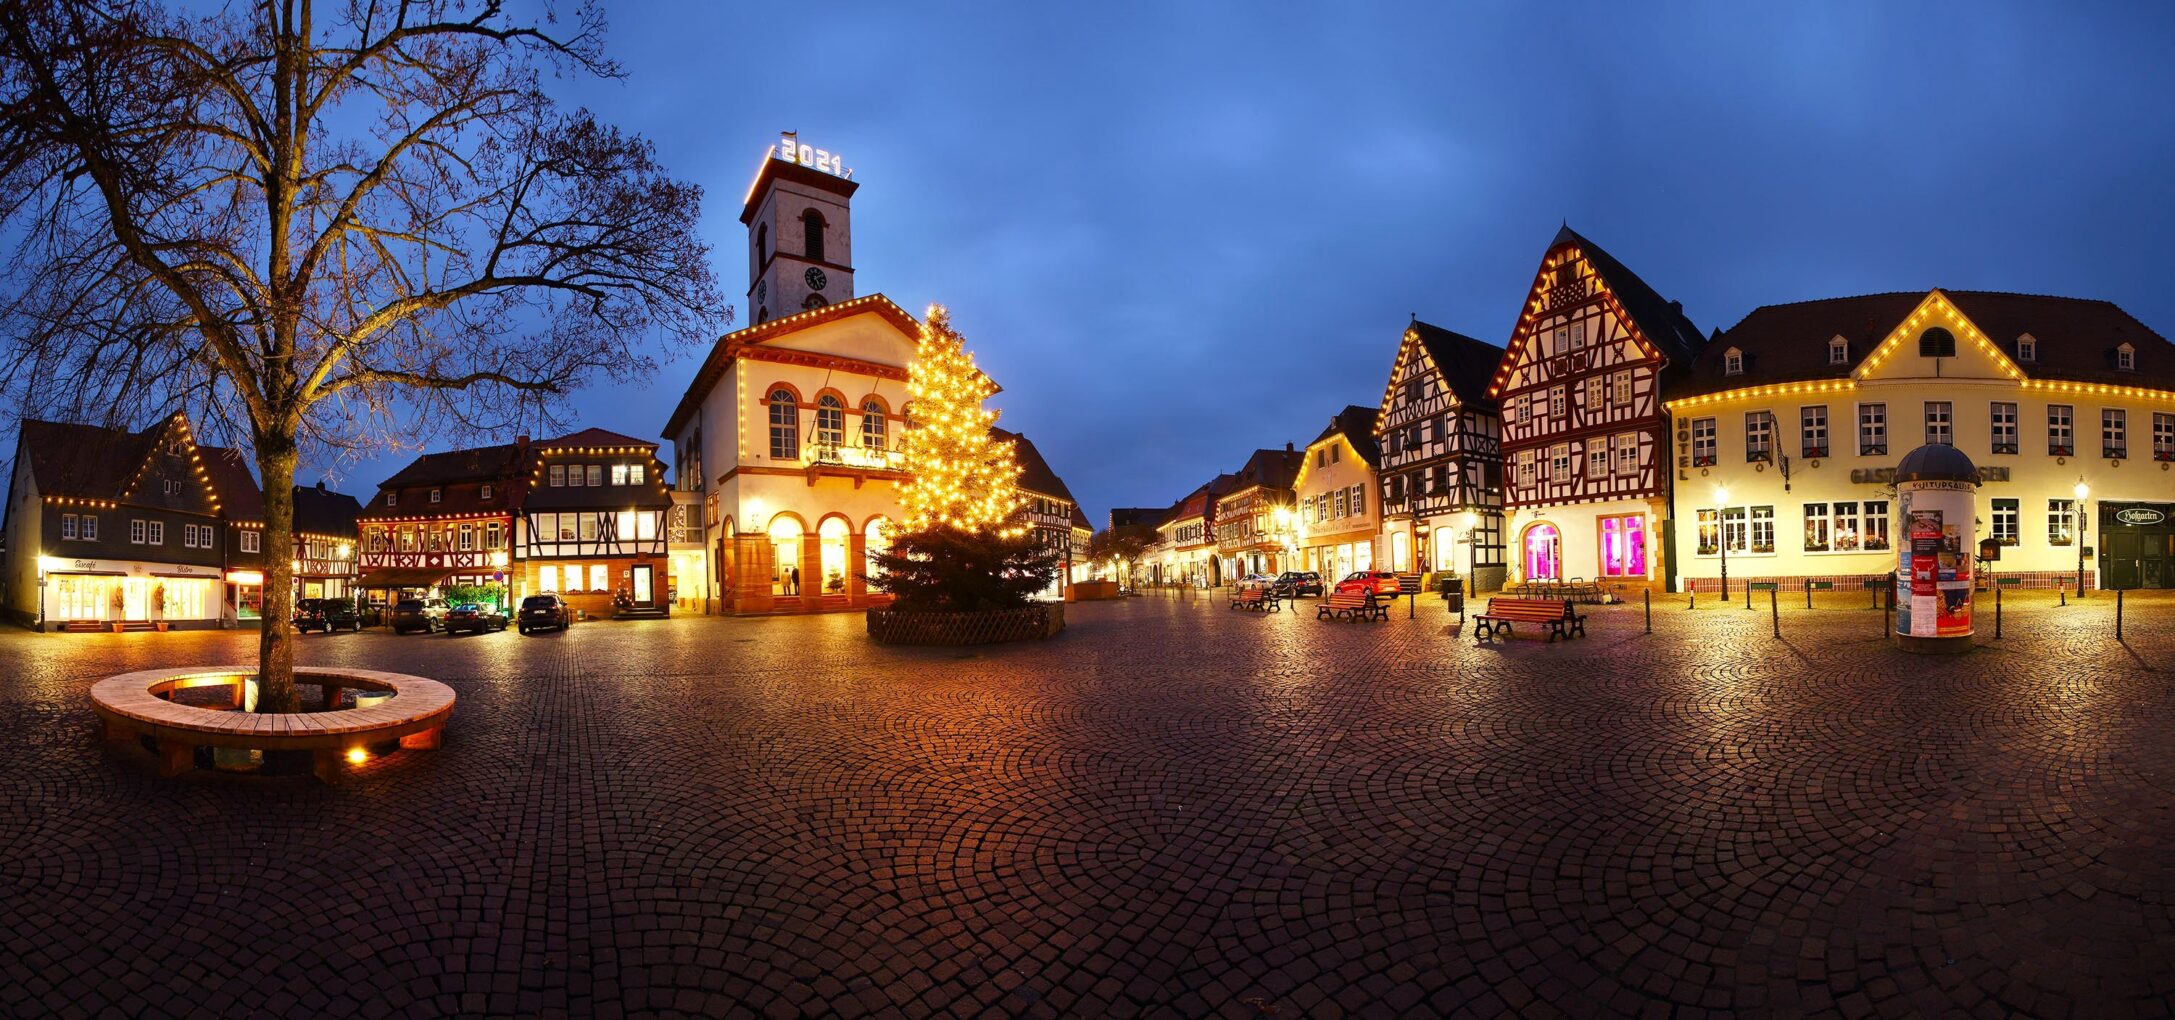 Weihnachtsmarkt Seligenstadt Markplatz 2 Seligen Stadt Marketing